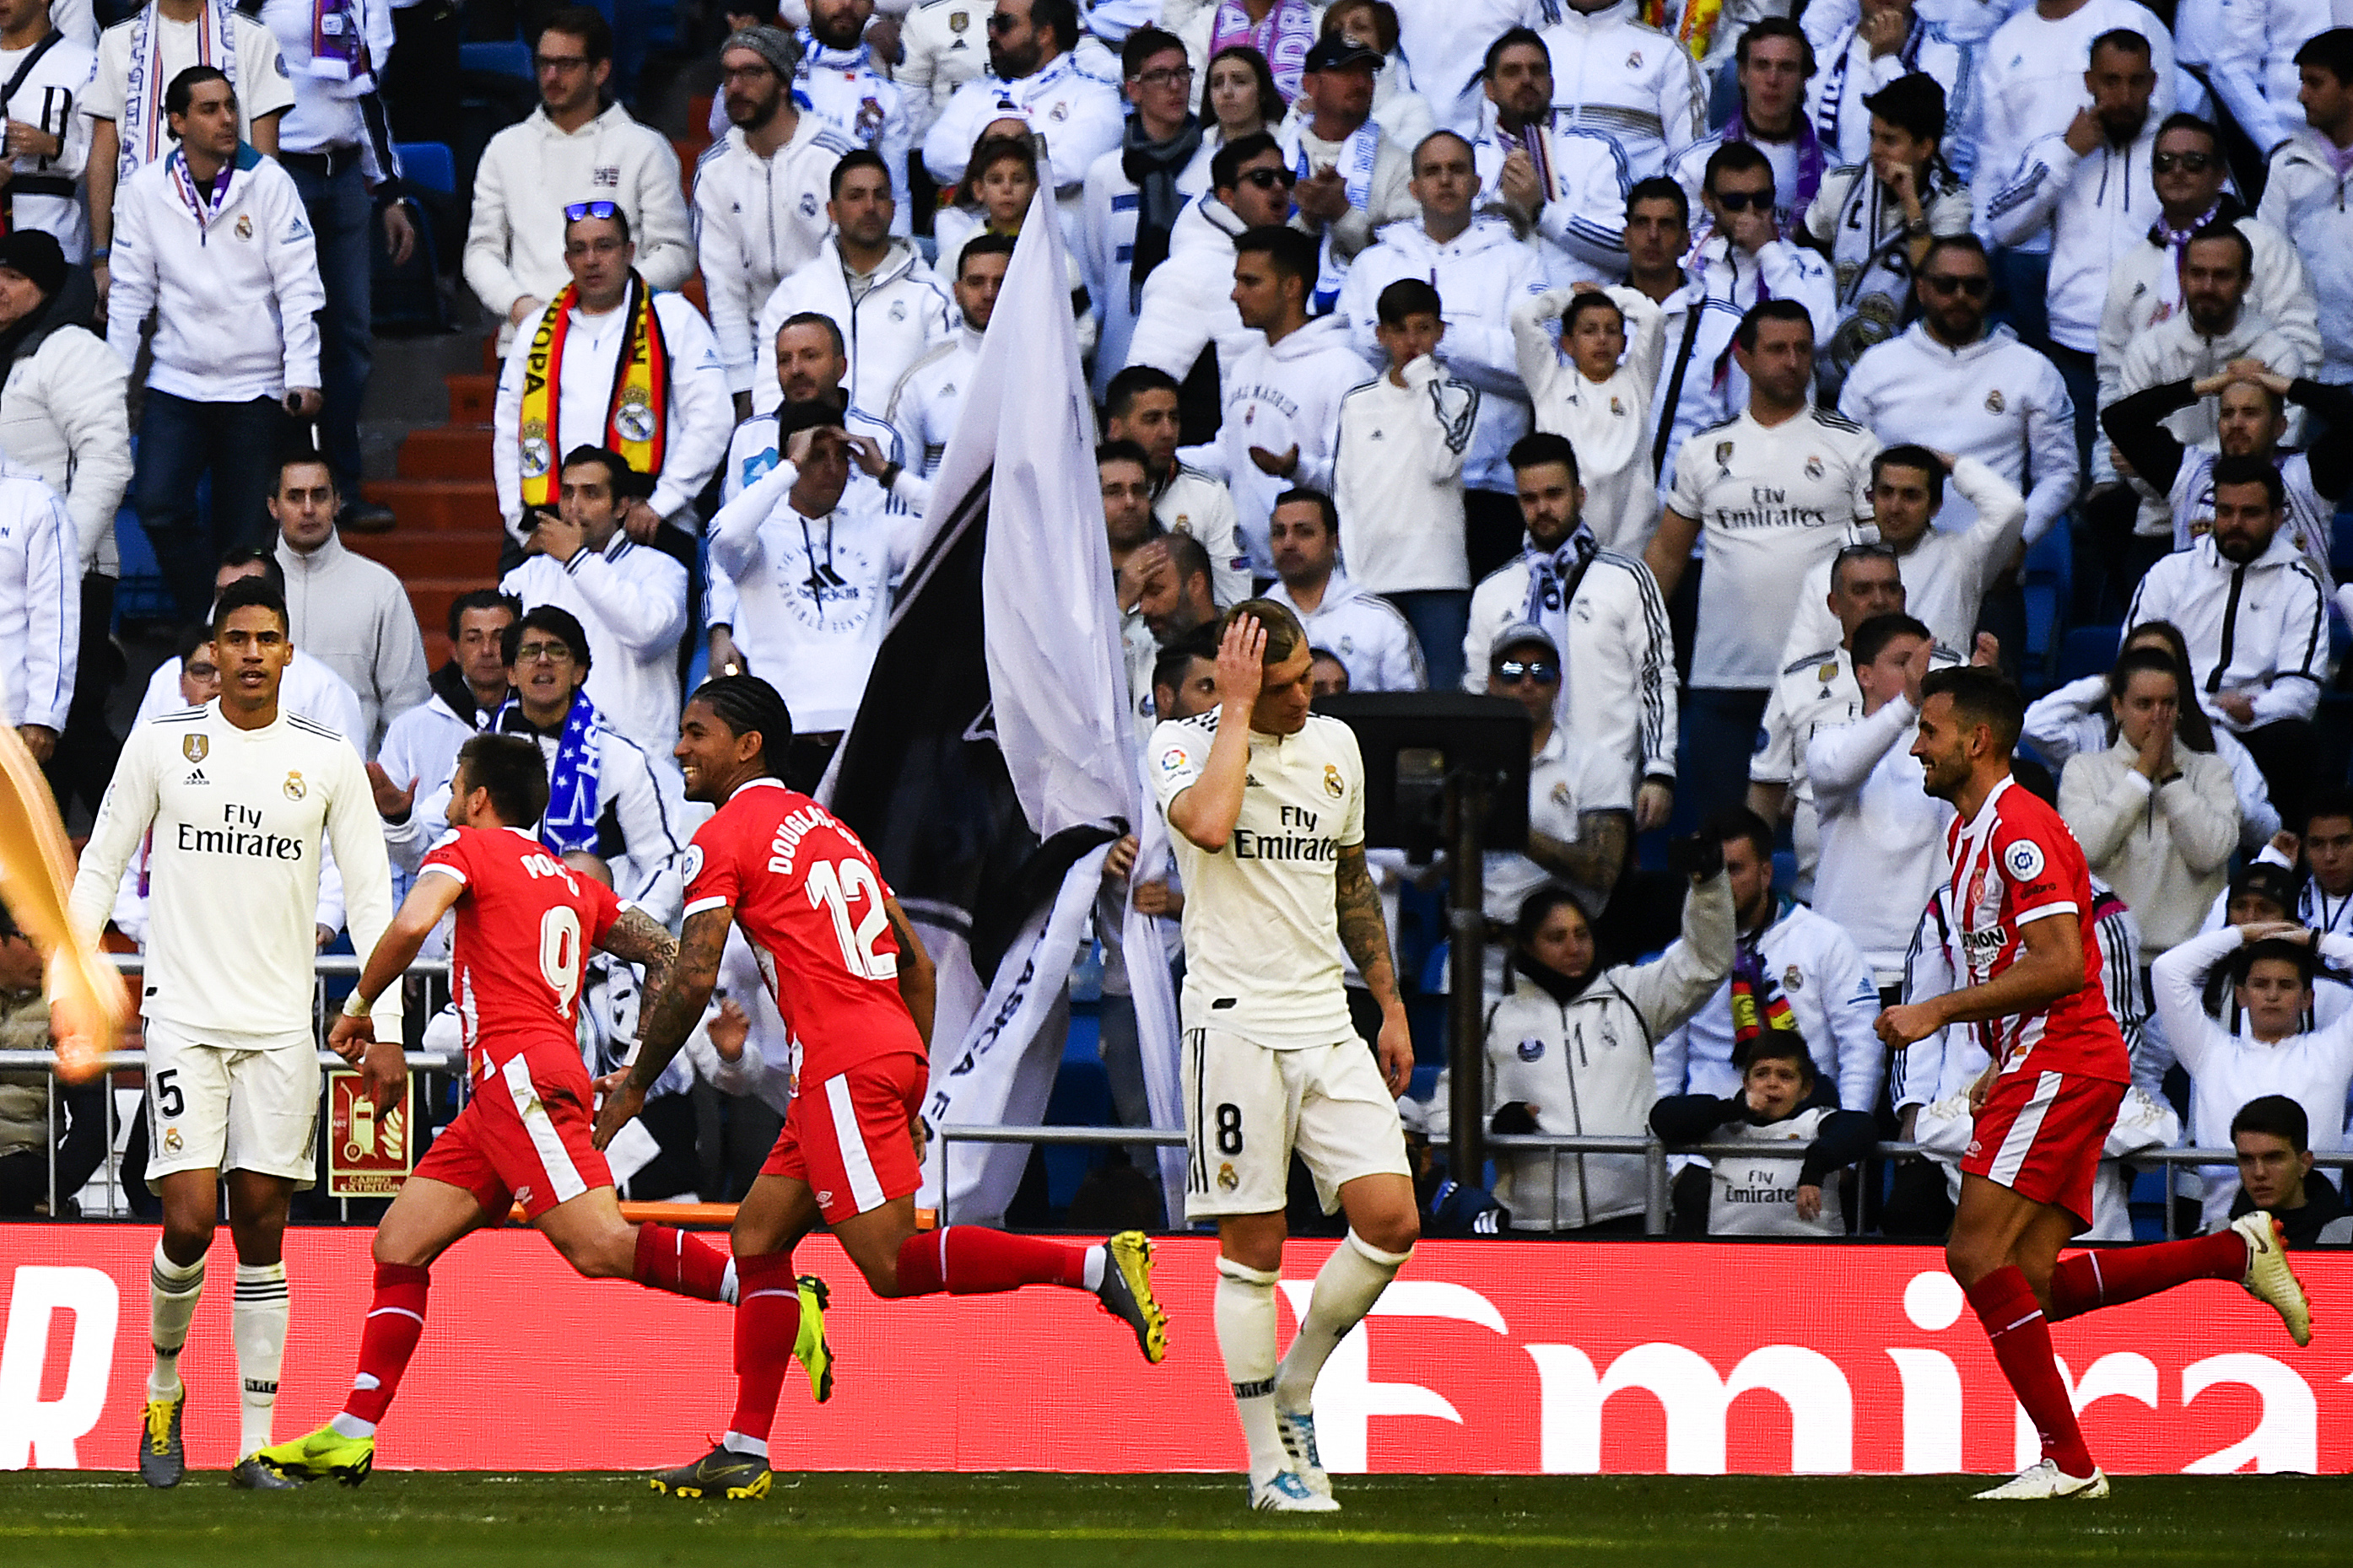 El Girona superó al Real Madrid con goles de Stuani y Portu. (Foto Prensa Libre: AFP)